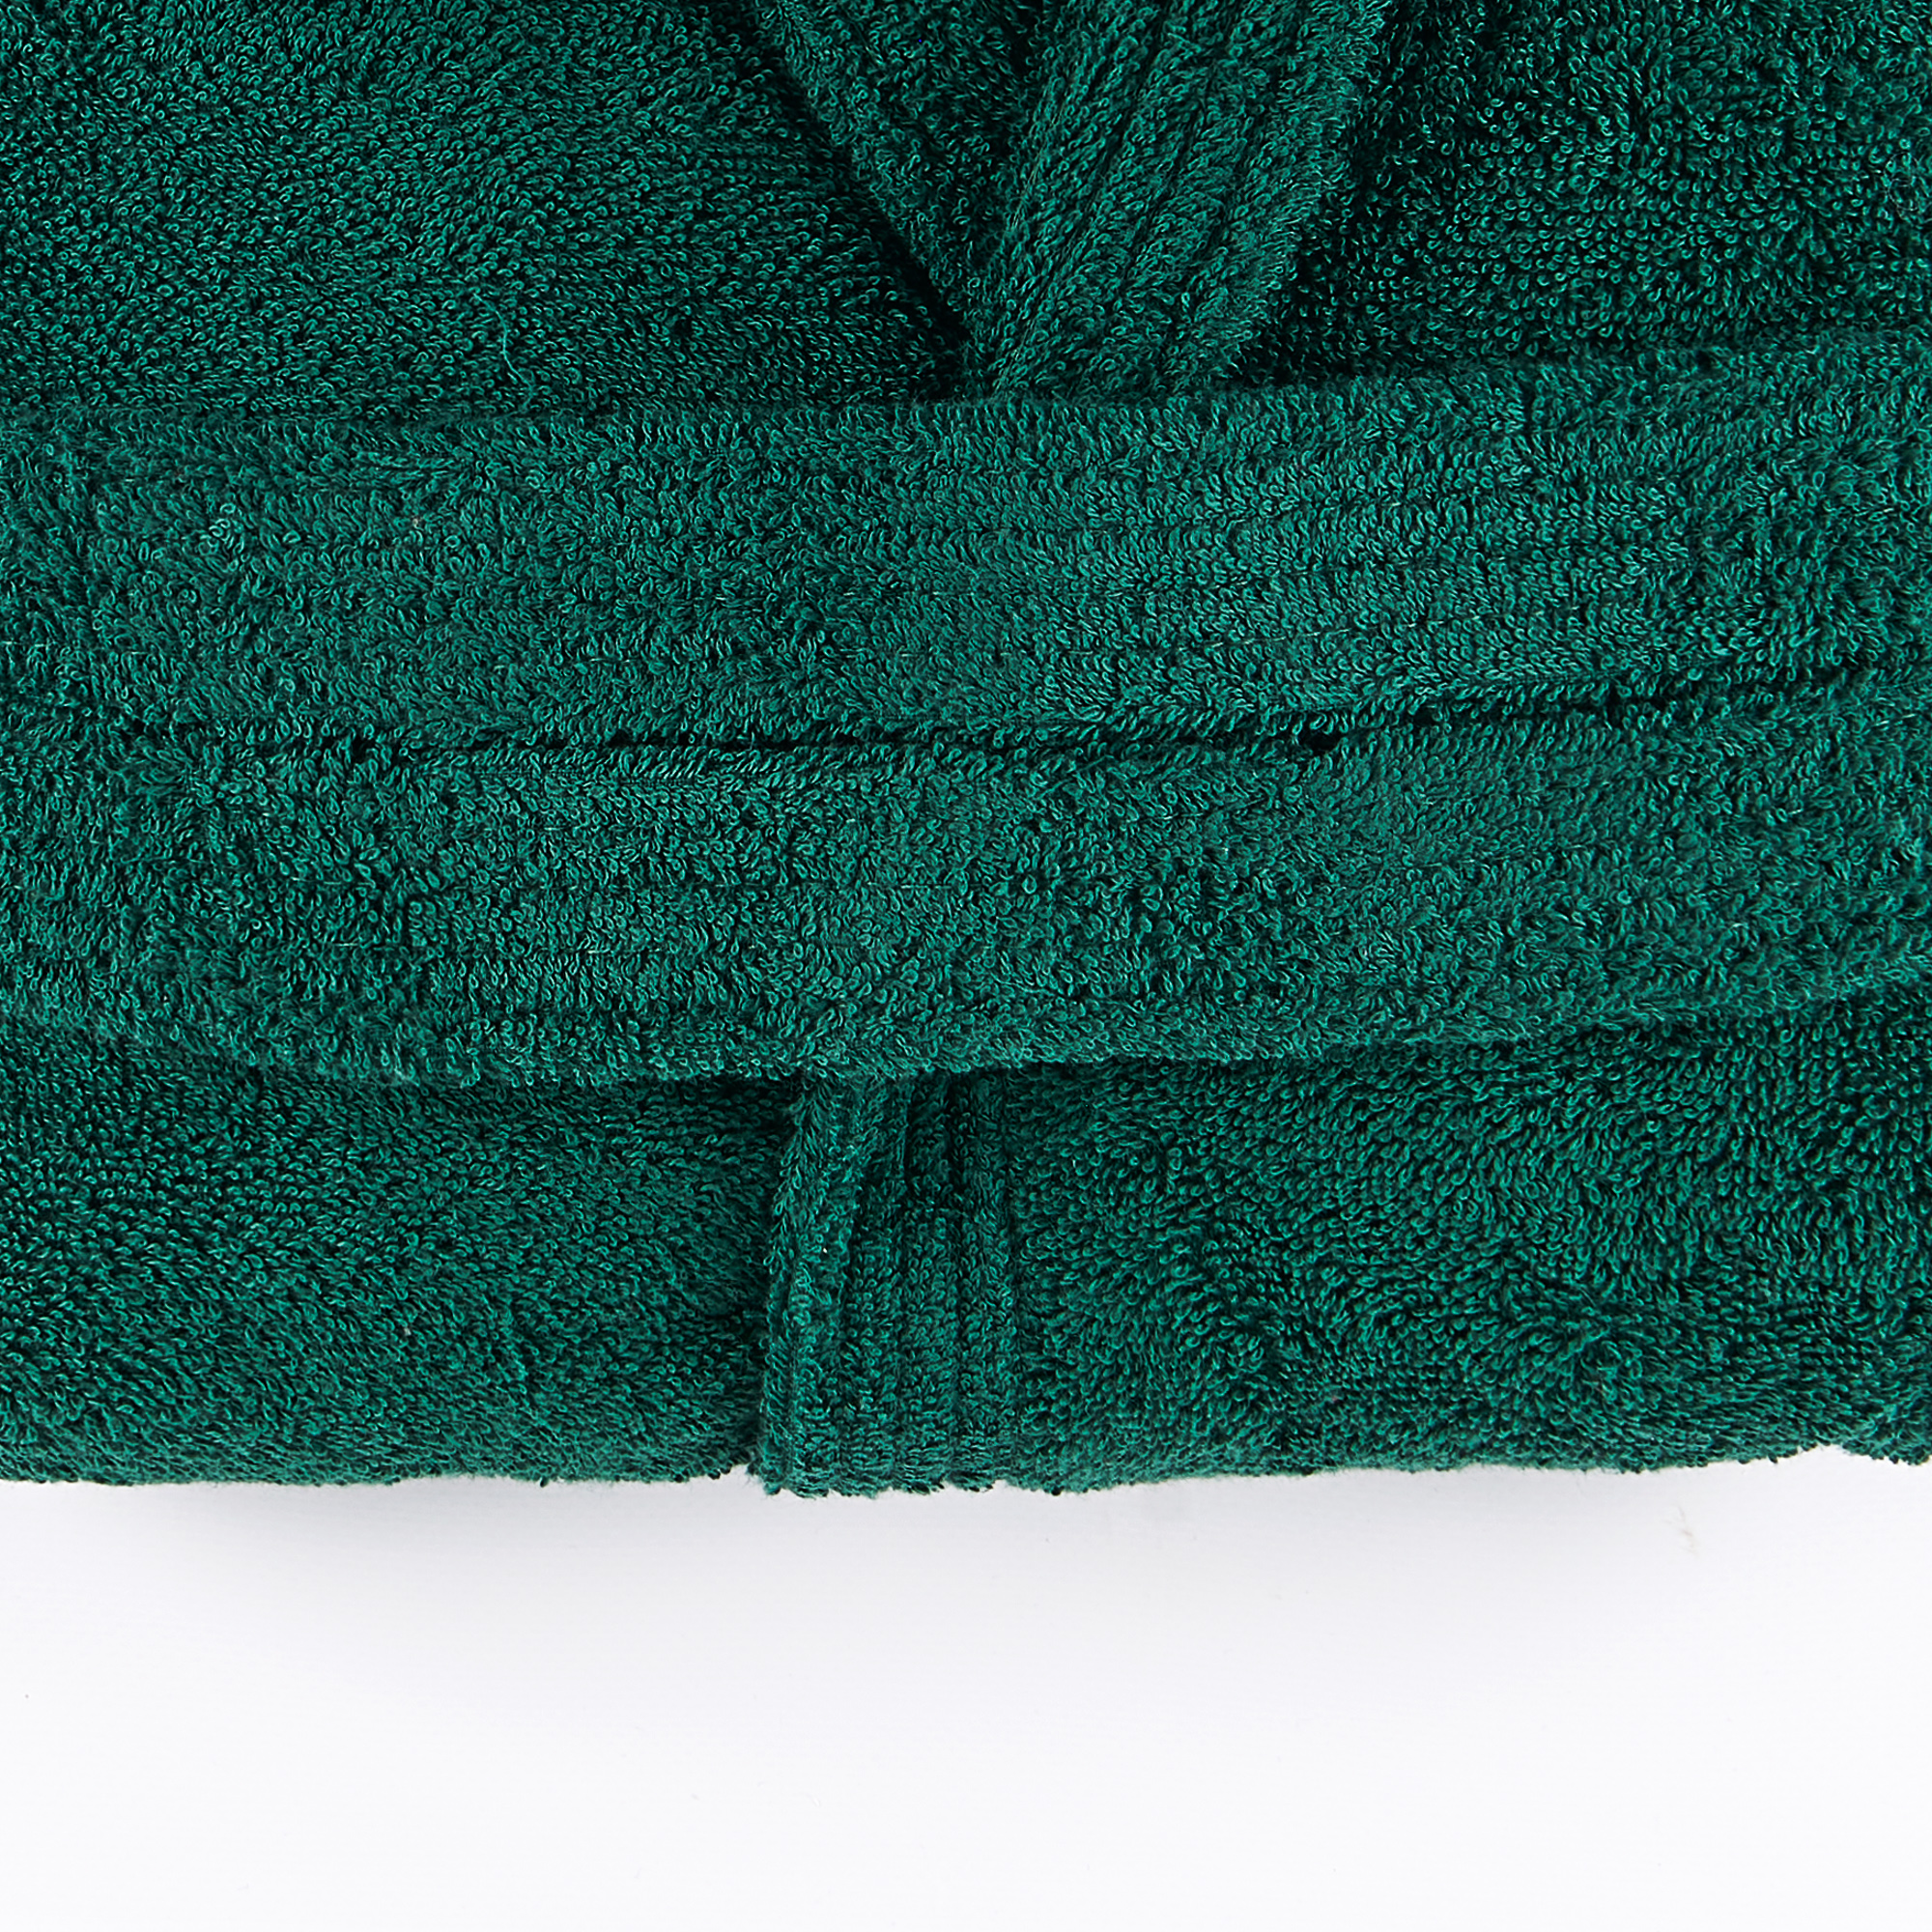 Халат с капюшоном из живого полотенца verde inglese Maè